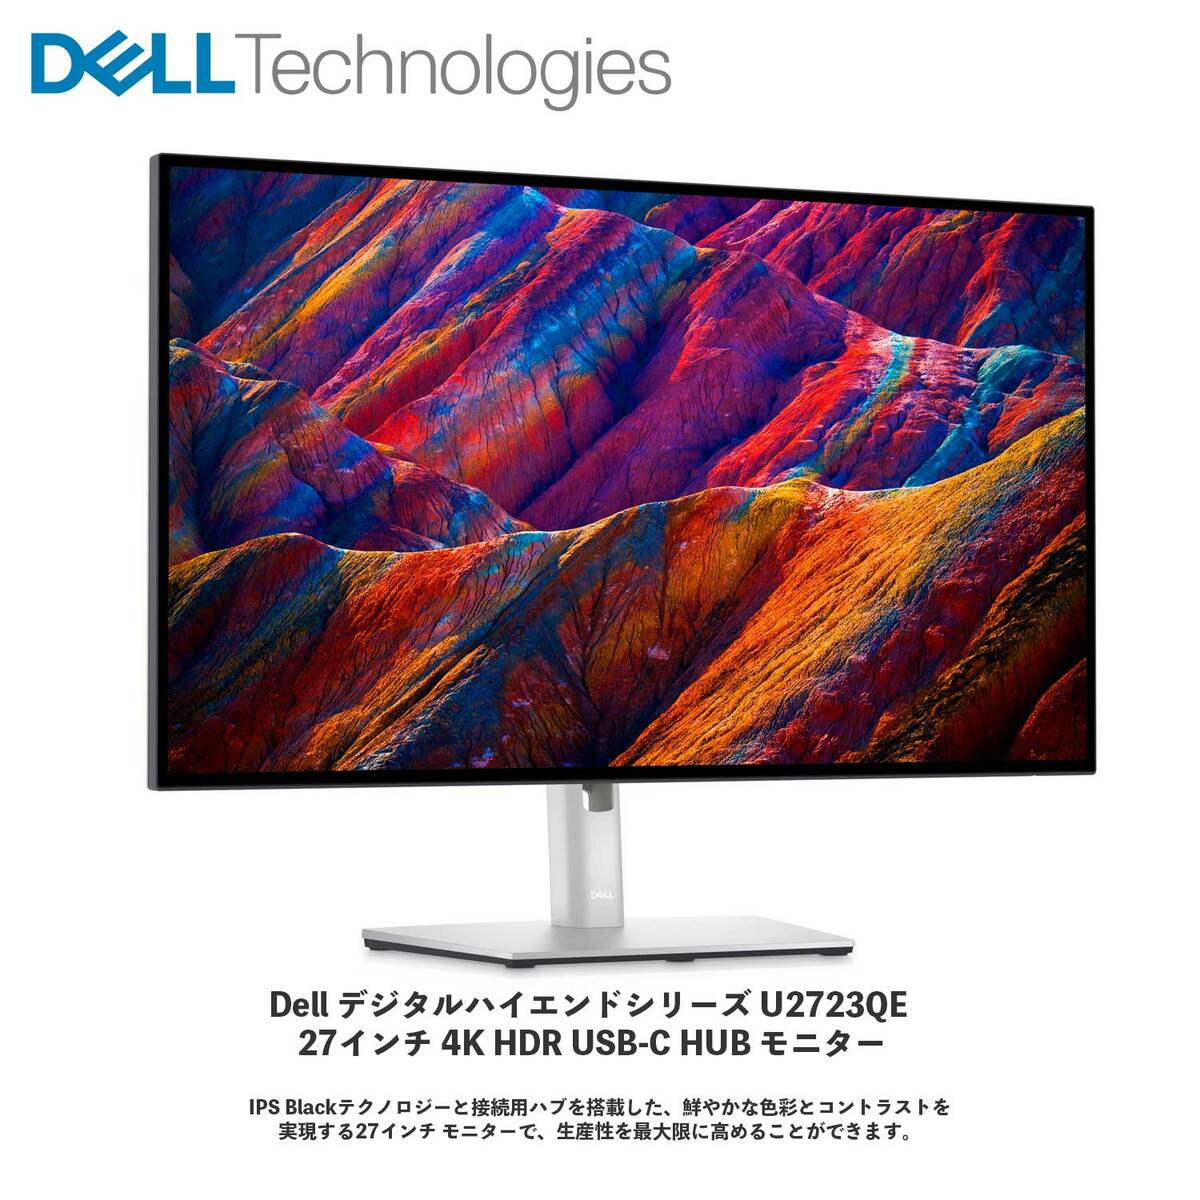 【新品 即納 箱破損特価】Dell デジタル ハイエンドシリーズ U2723QE 27インチ 4K HDR USB-C HUB モニター |  パソコンショップNextInnovation